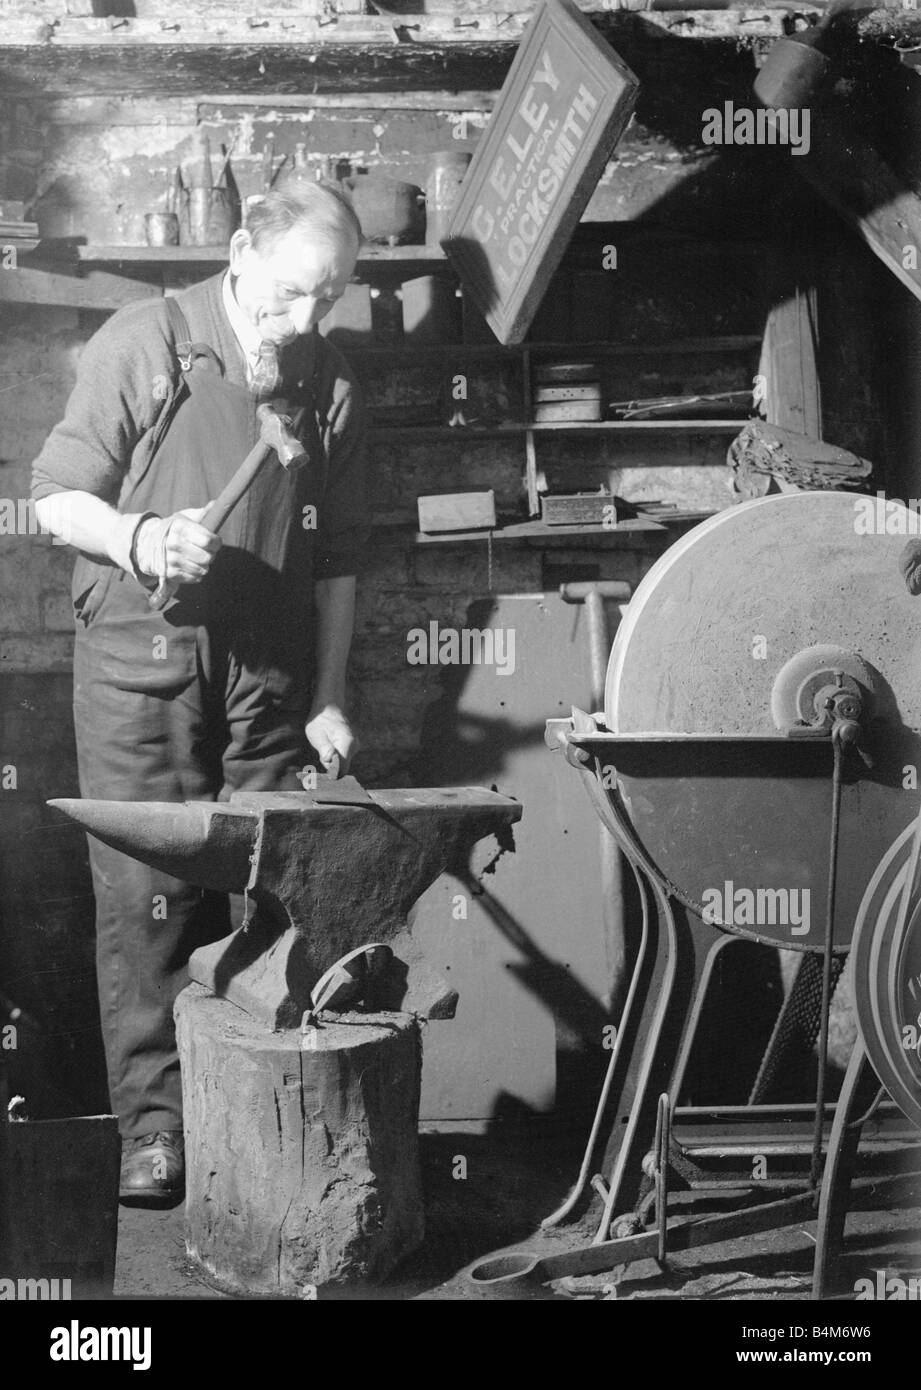 Un forgeron travaille dans sa forge l'élaboration d'une feuille de métal sur son enclume, vers 1940 Banque D'Images